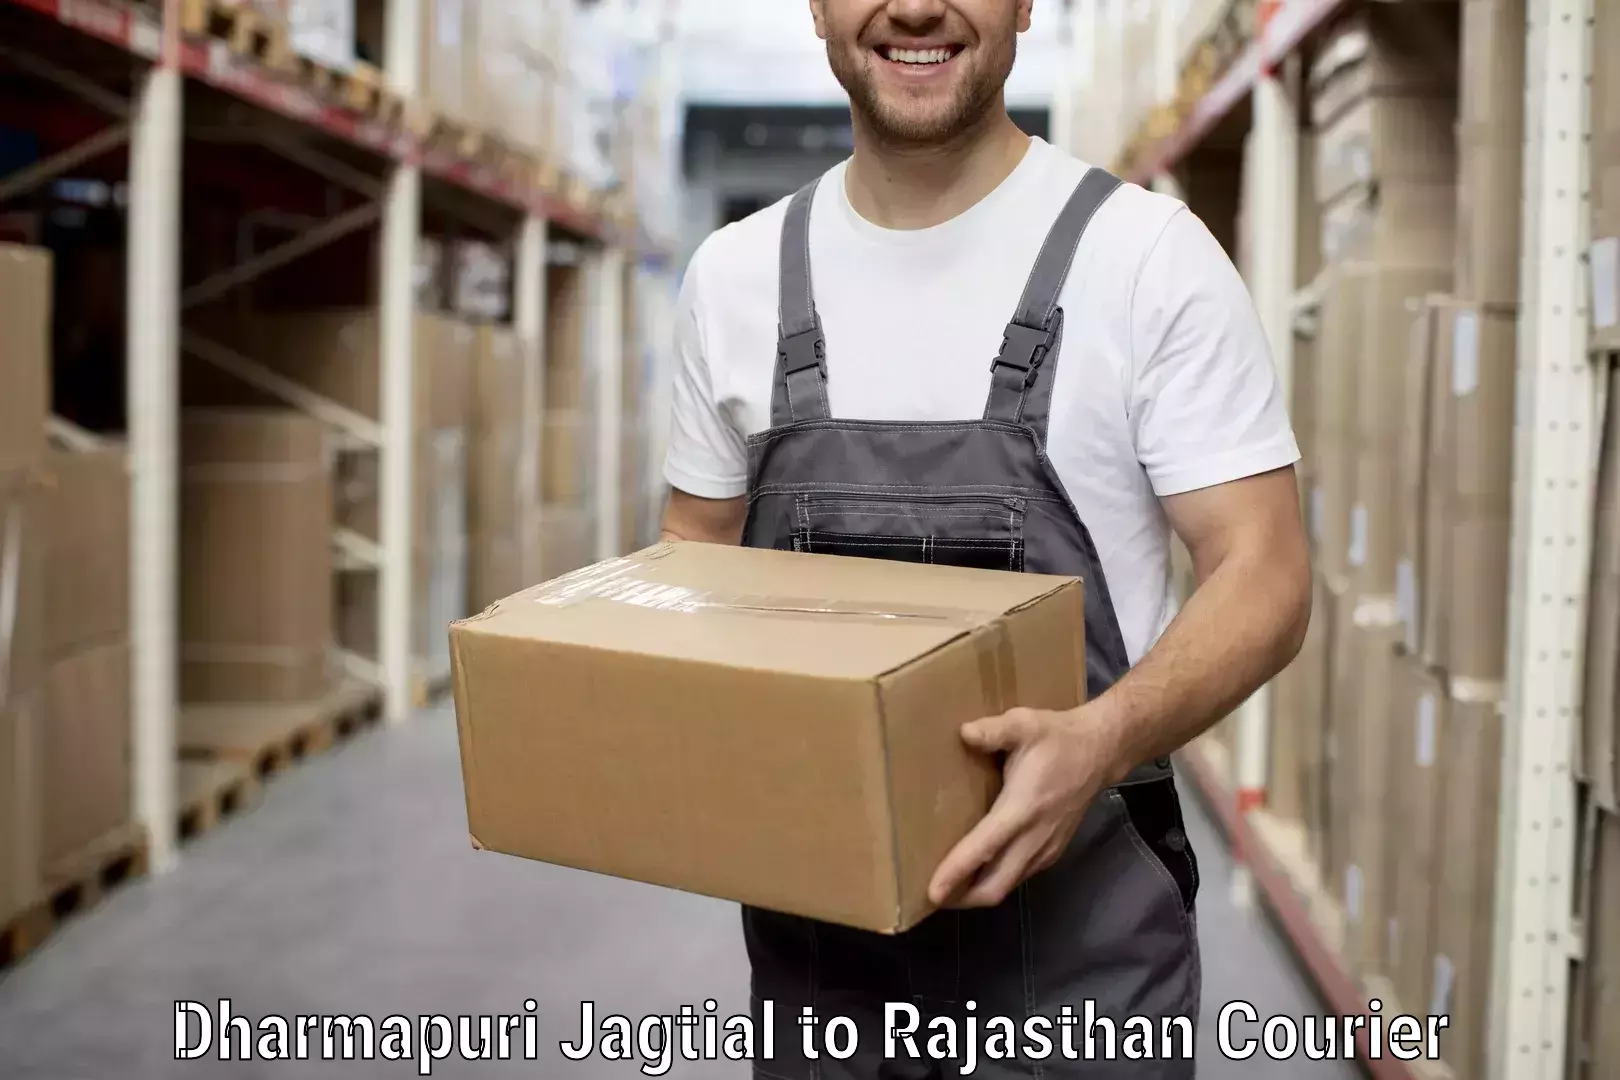 Trusted furniture movers Dharmapuri Jagtial to Sikar